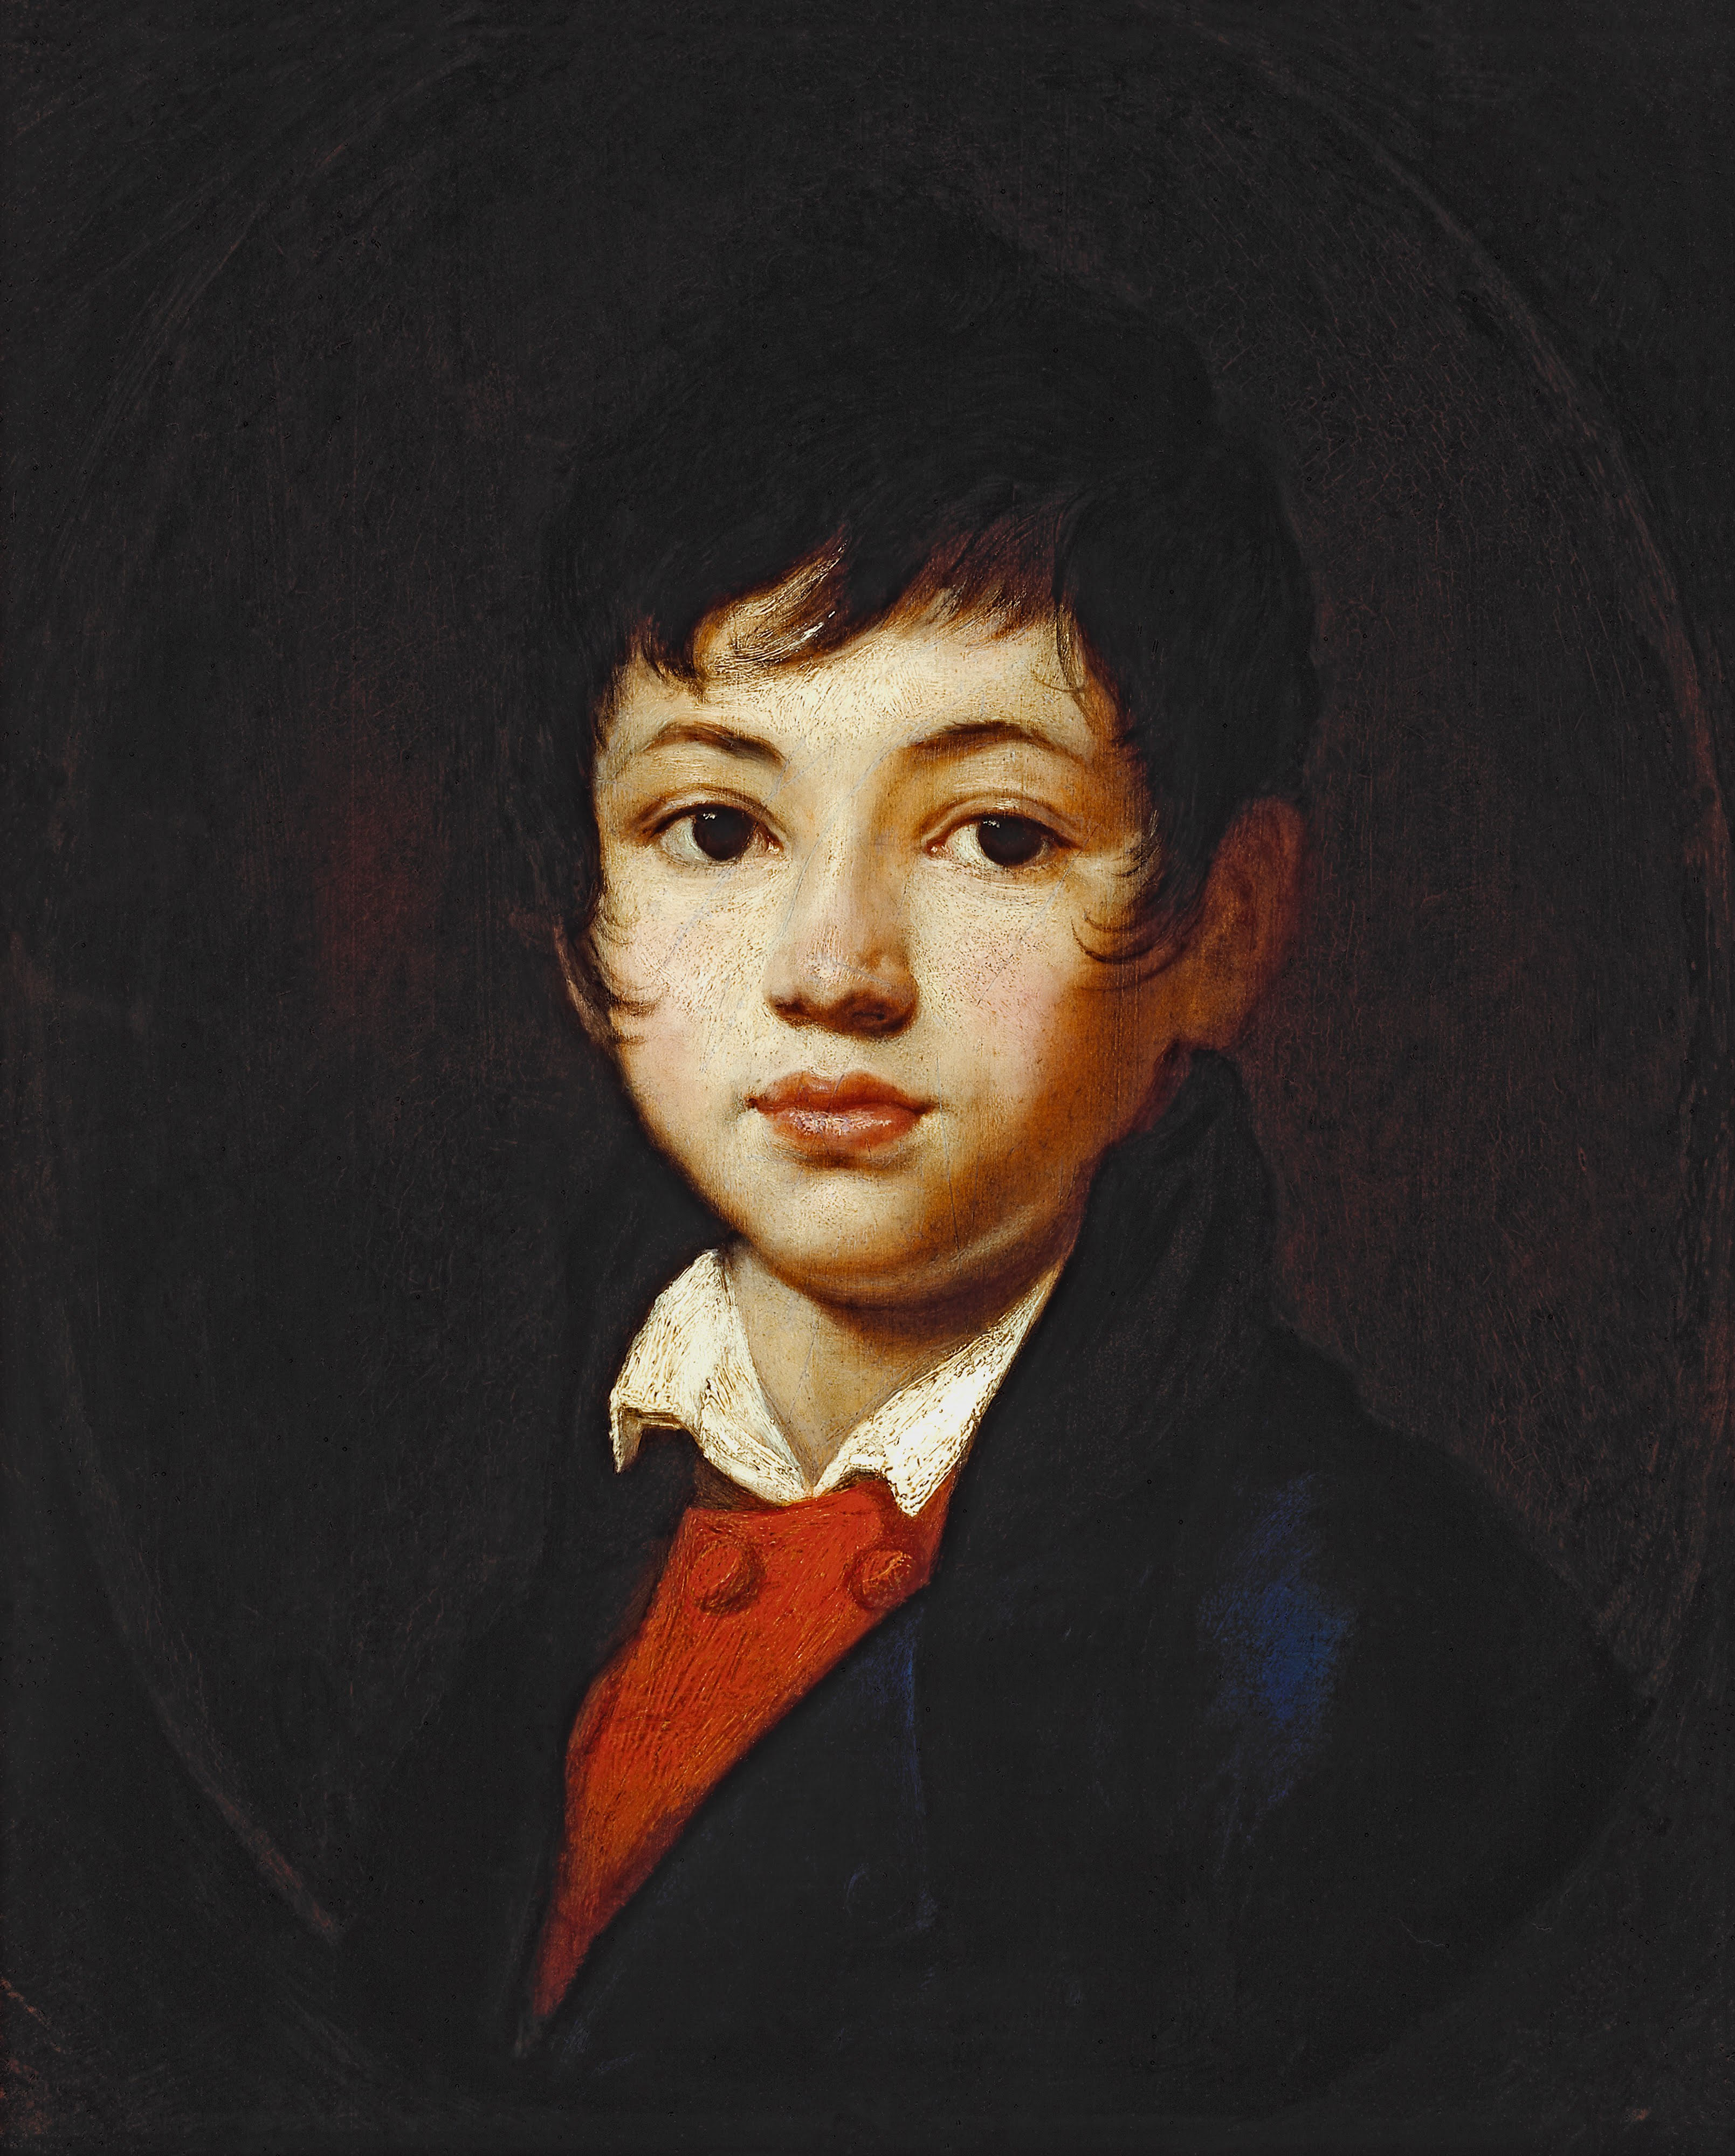 Кипренский. Портрет Александра Александровича Челищева. 1808 - начало 1809